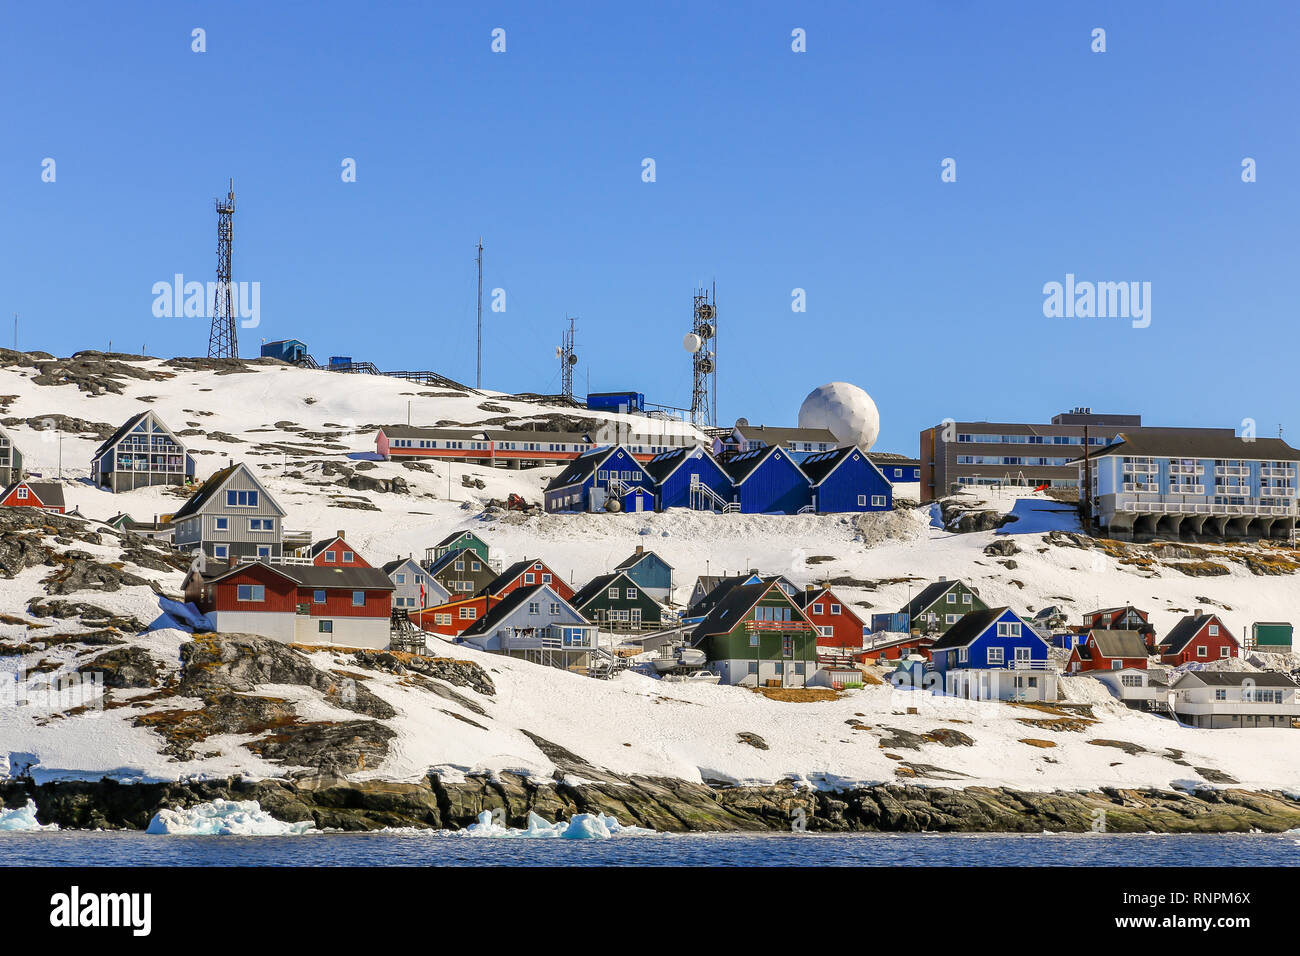 Beaucoup d'Inuits abris et maisons colorées situé sur la côte rocheuse le long du fjord, Nuuk, Groenland ville8 Banque D'Images